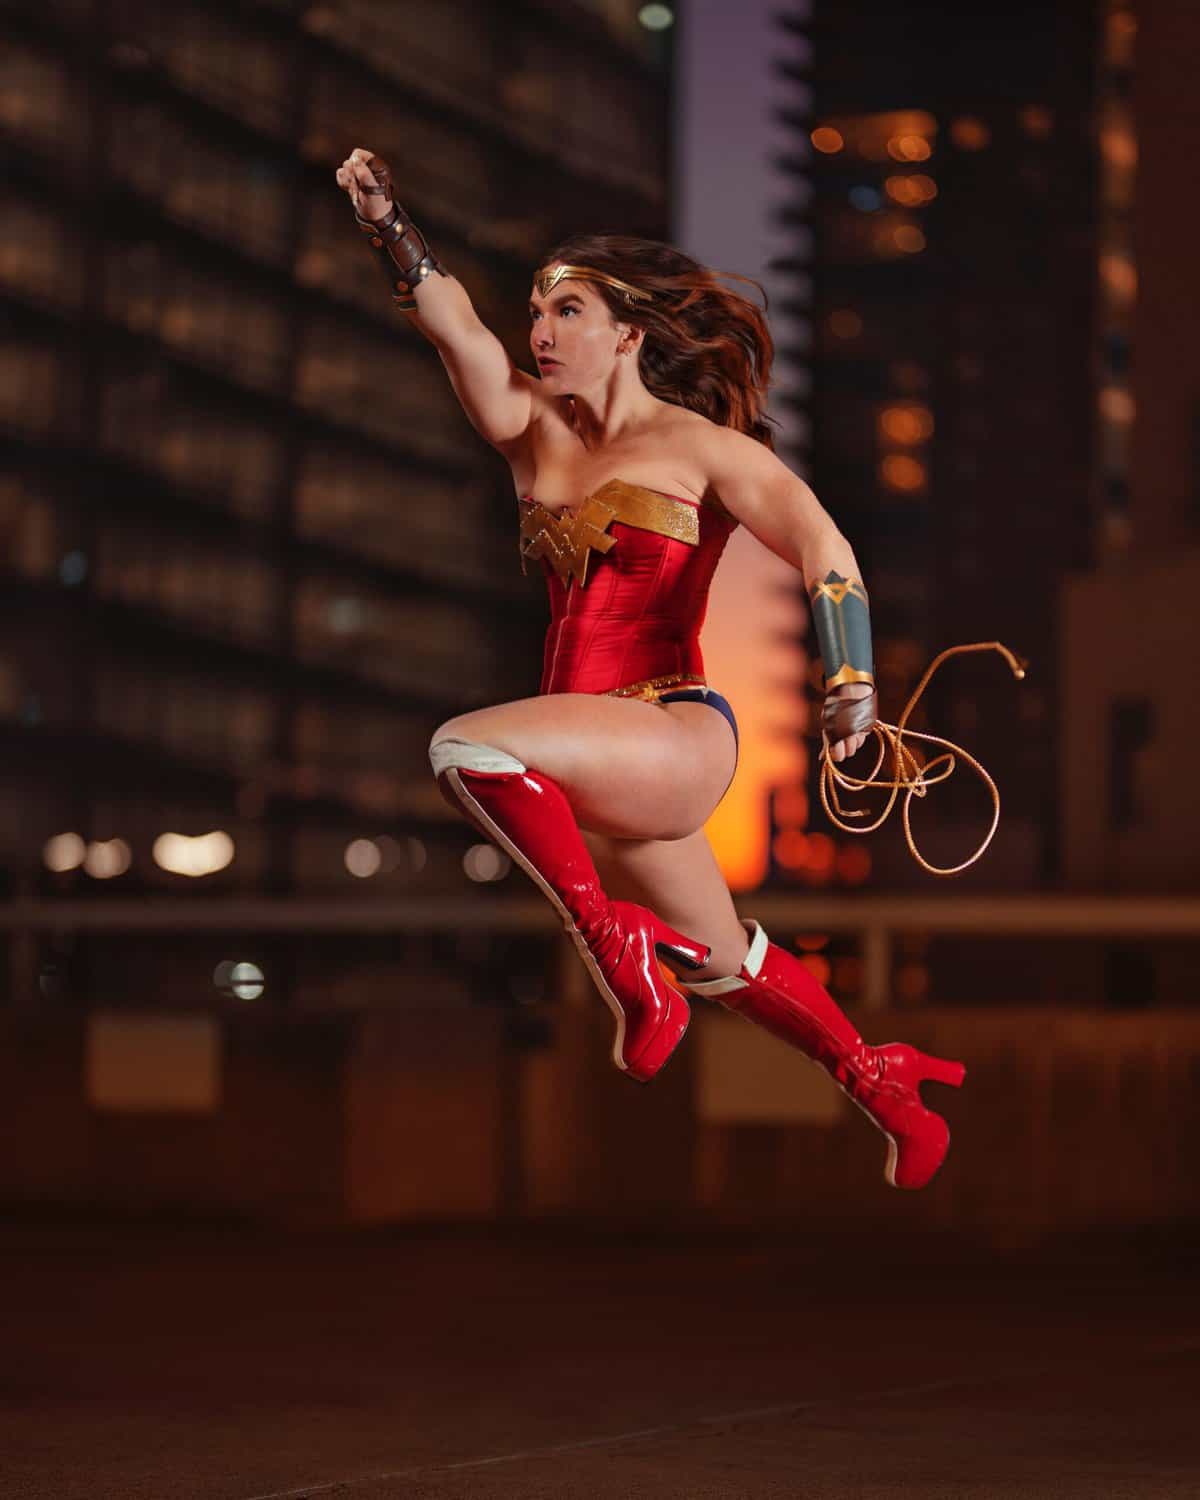 Wonder Woman by Roy Rena - Pexels